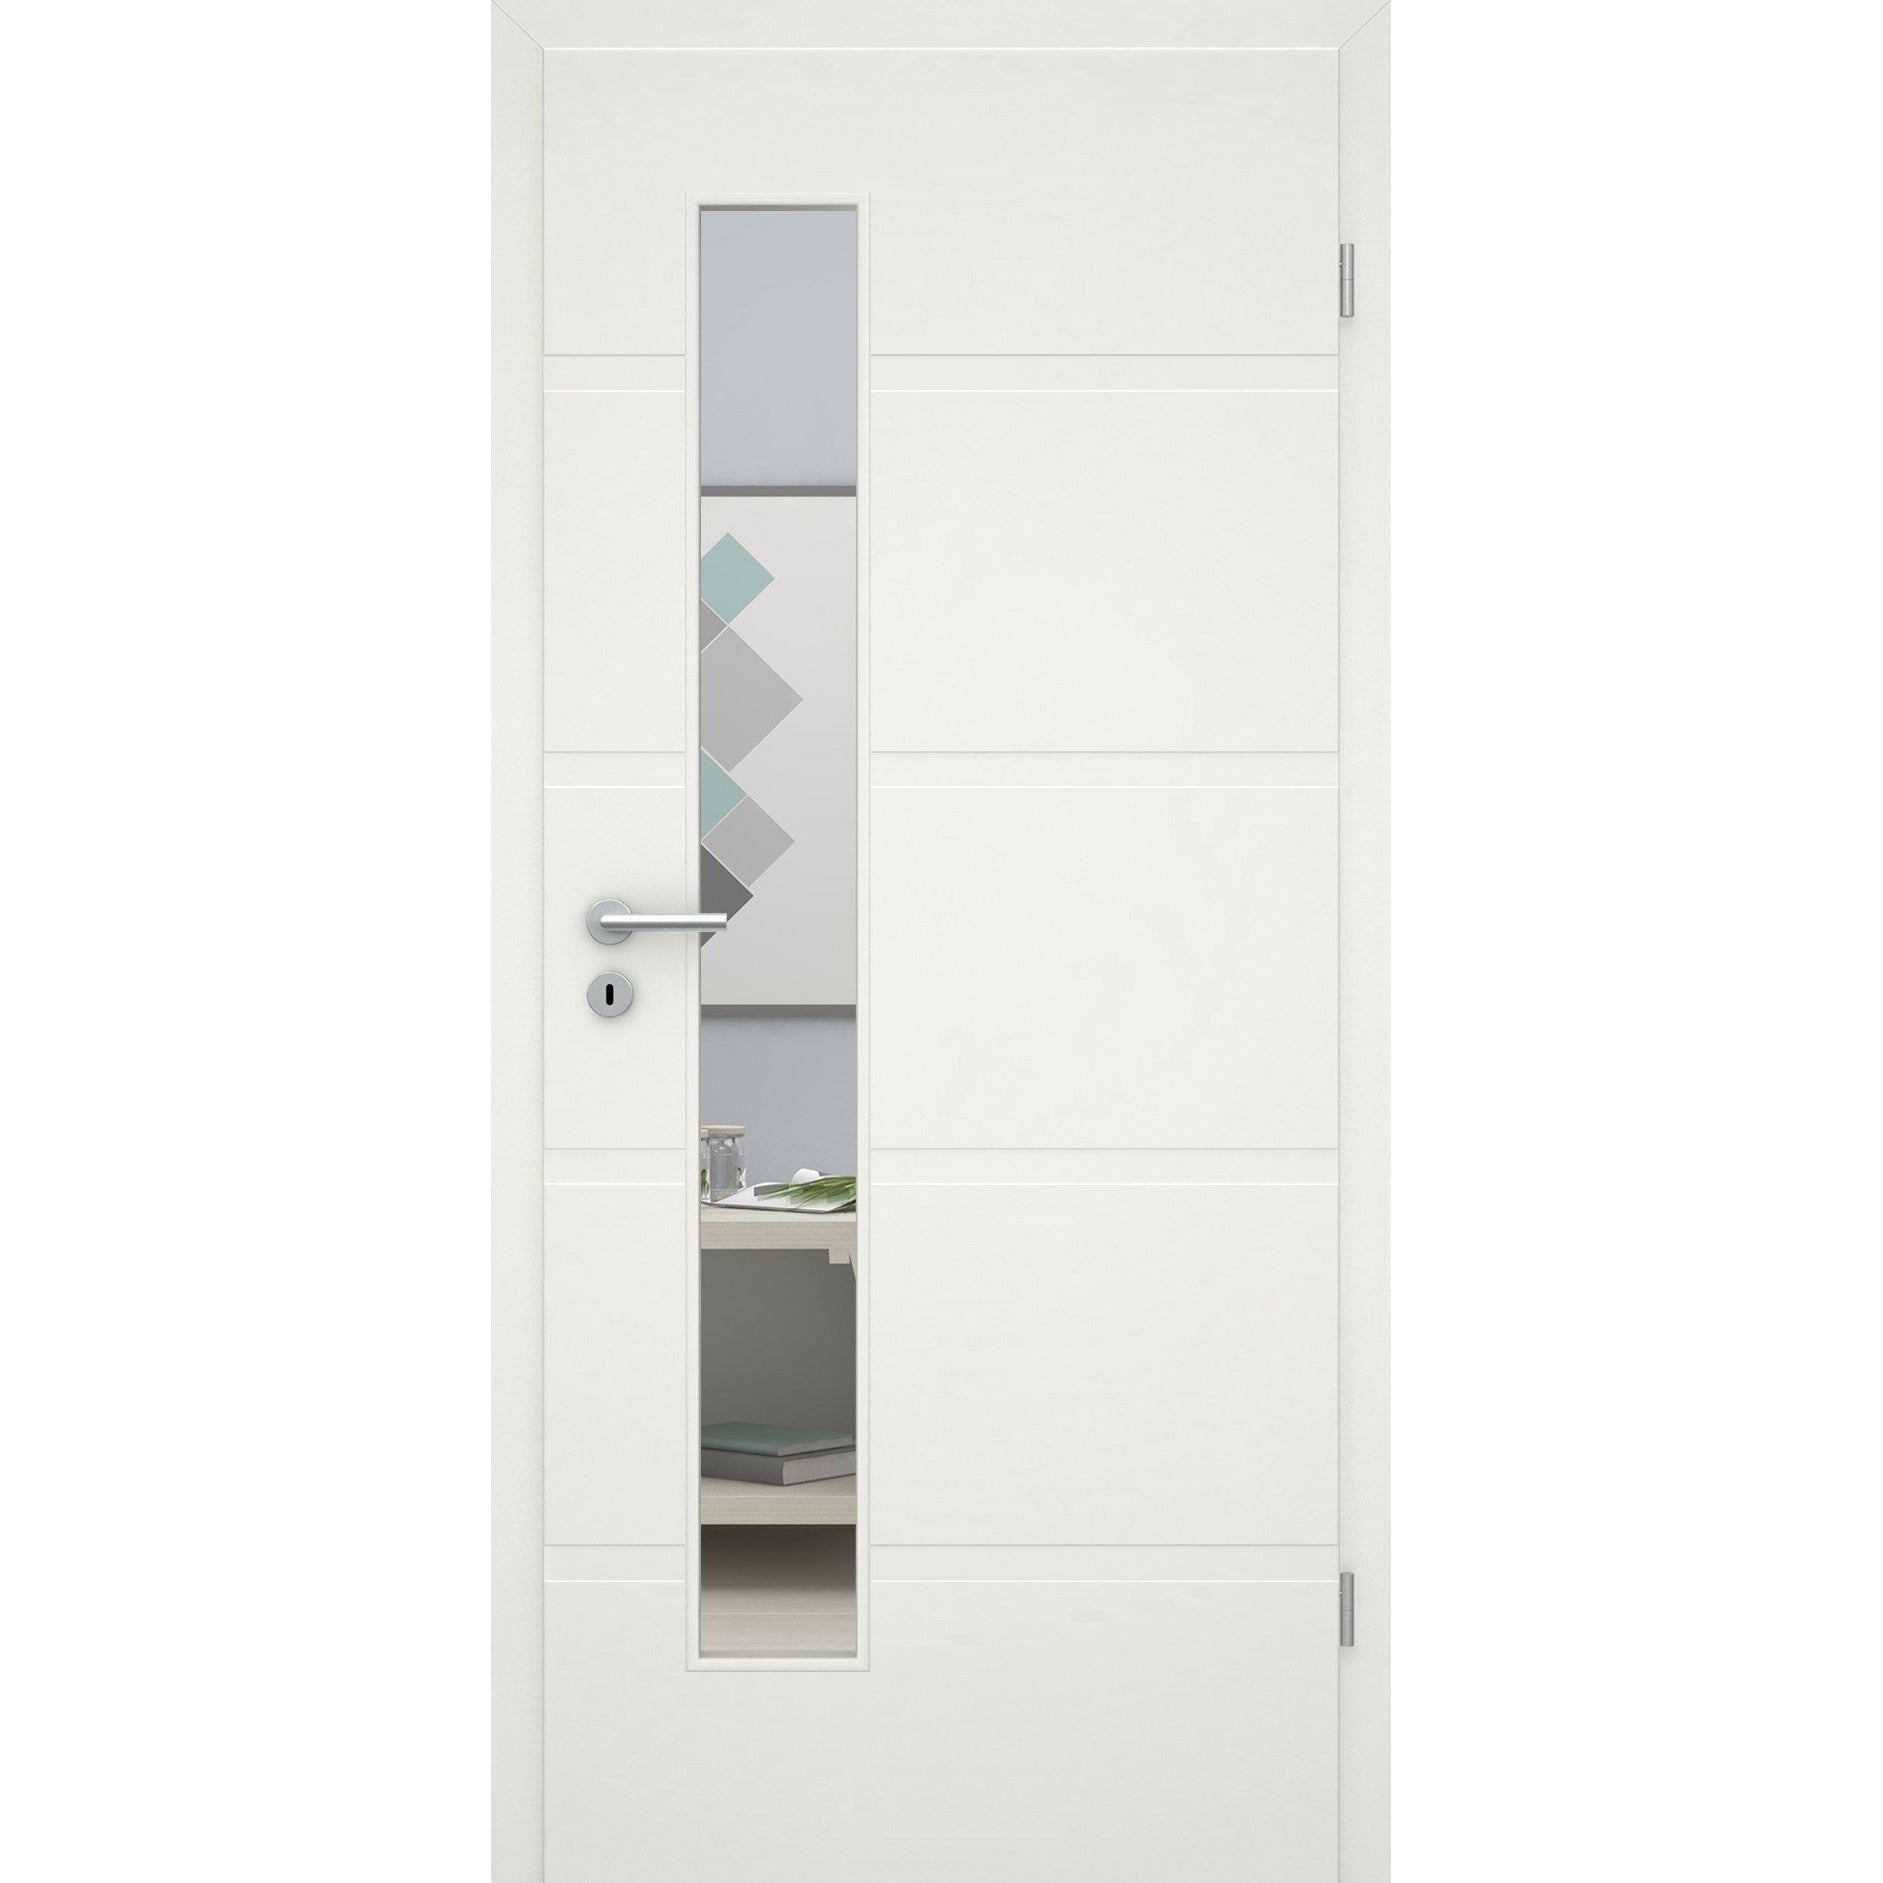 Zimmertür mit Zarge und Lichtausschnittsoft-weiß 4 breite Rillen Eckkante - Modell Designtür QB41LAS